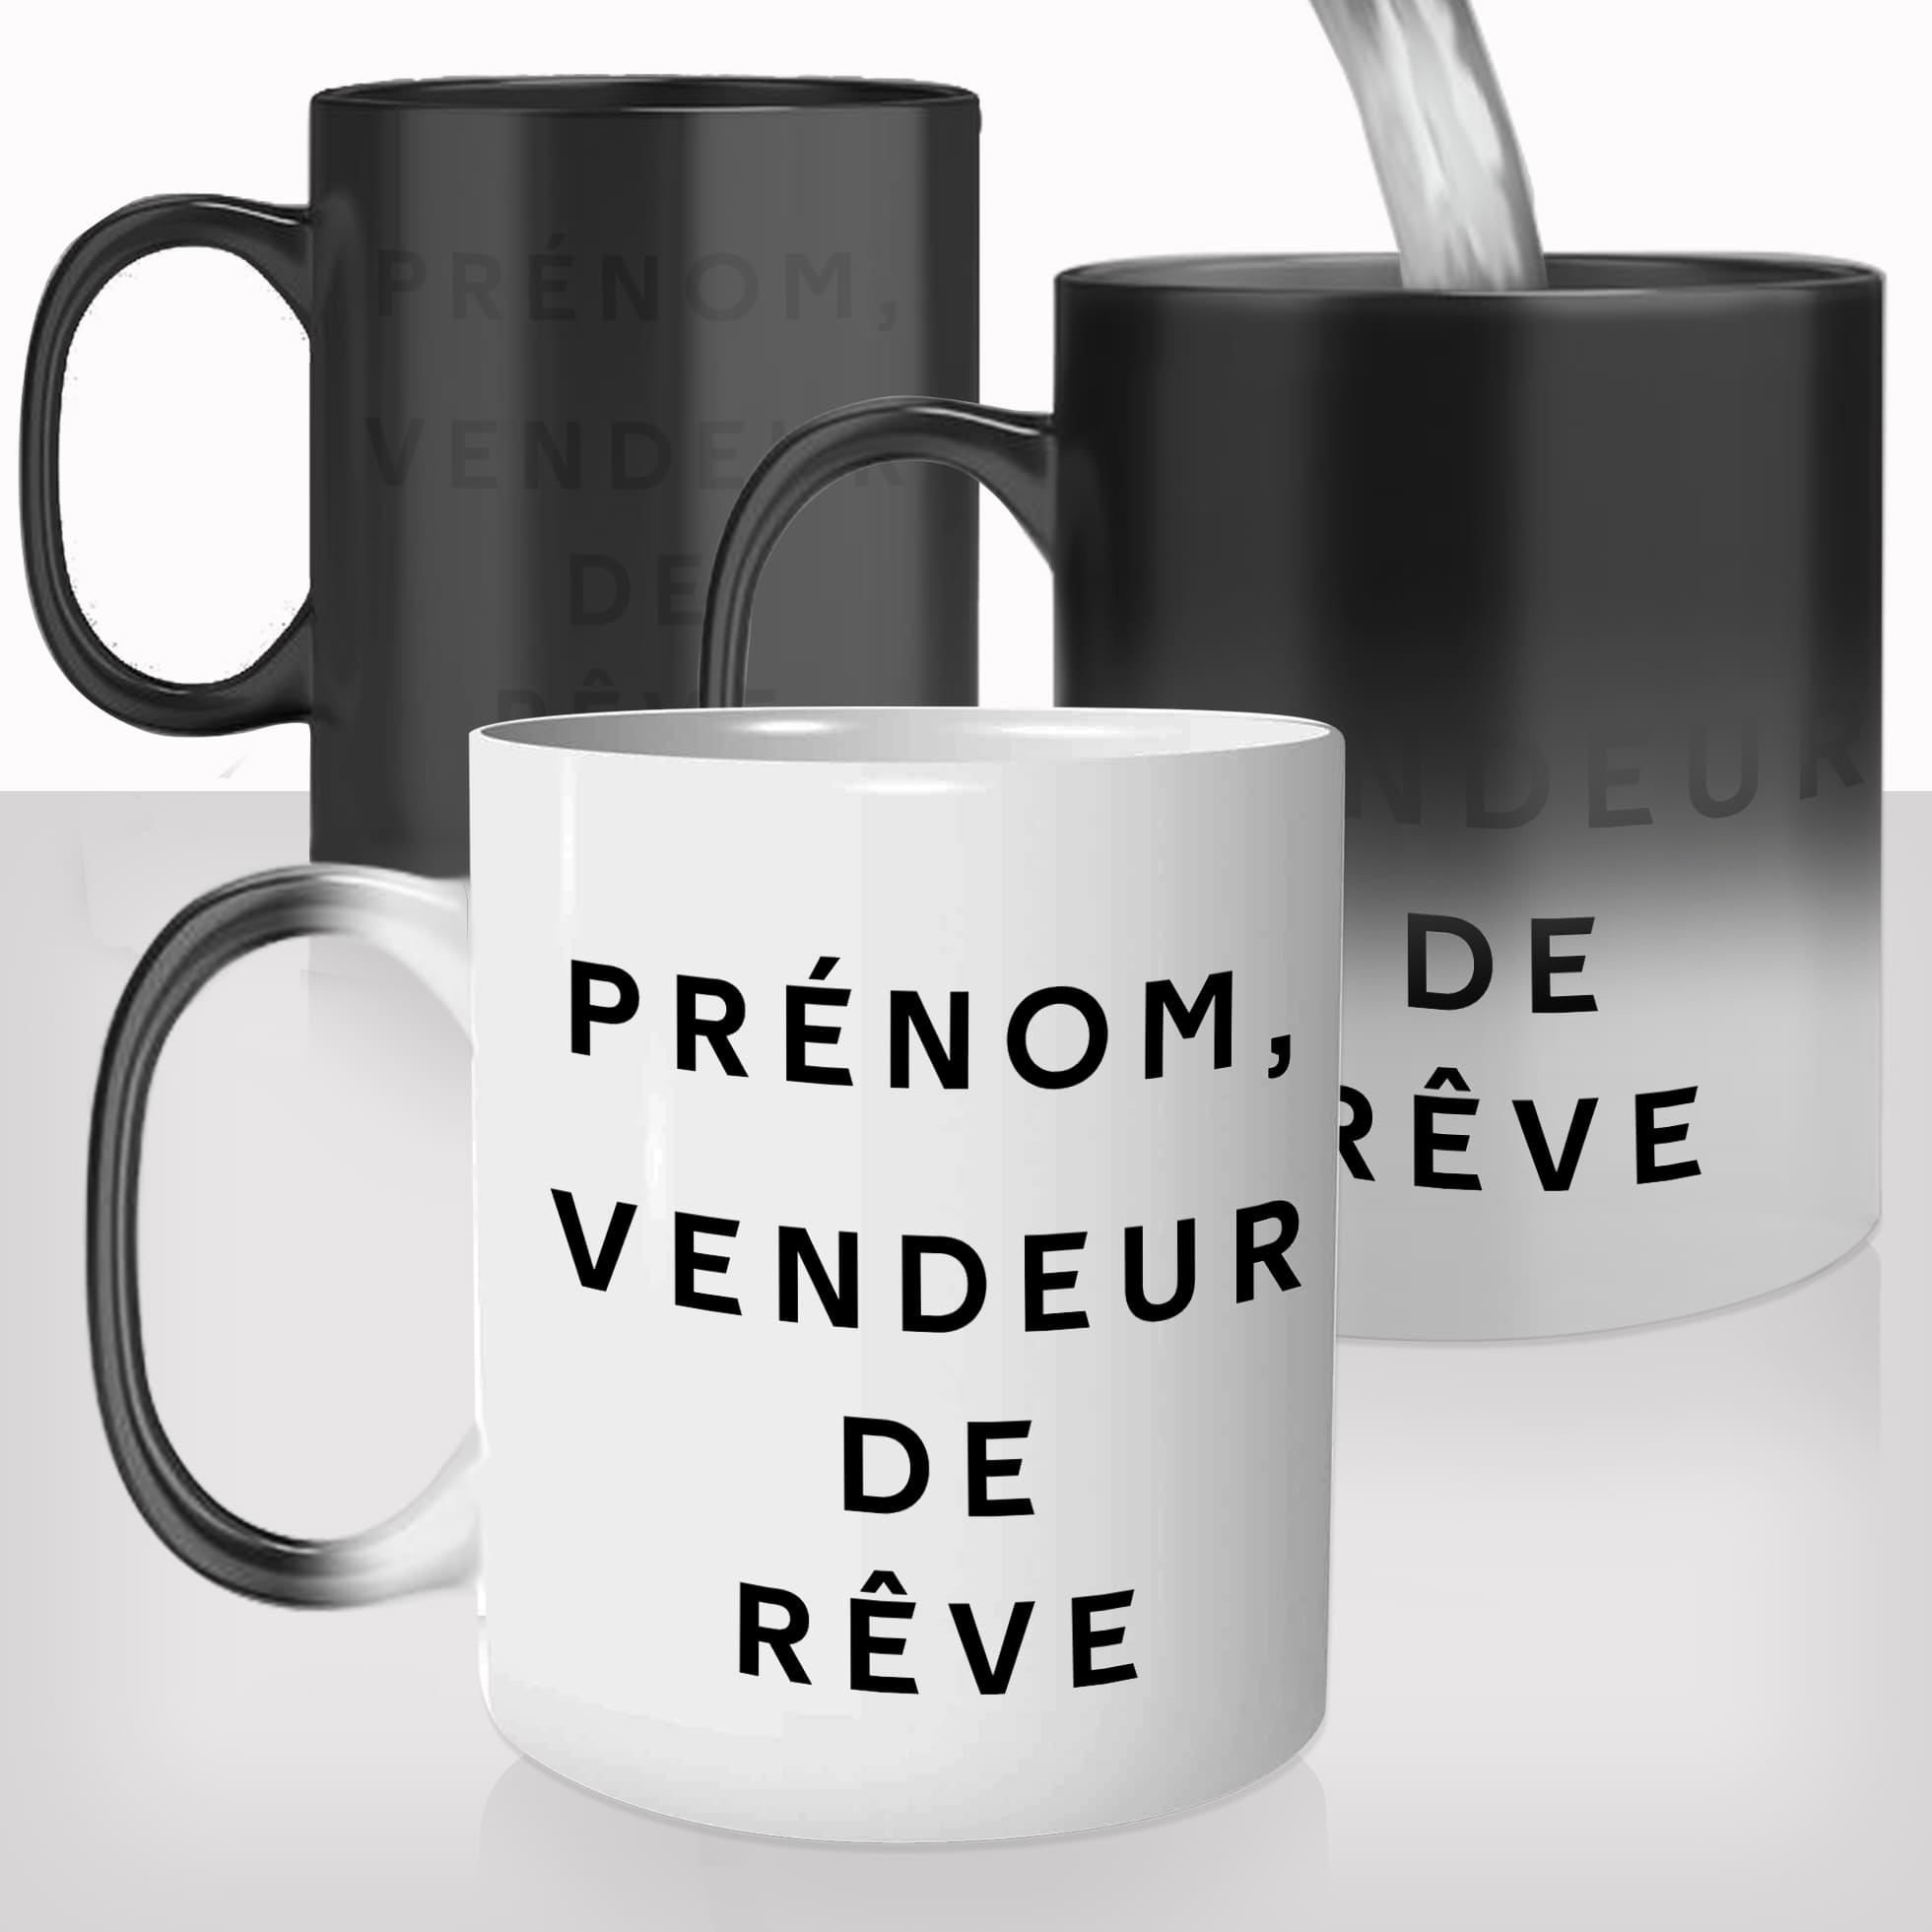 mug-magique-personnalisé-tasse-thermo-reactif-thermique-vendeur-de-reve-prenom-personnalisable-collegue-cadeau-original-cool-paillettes